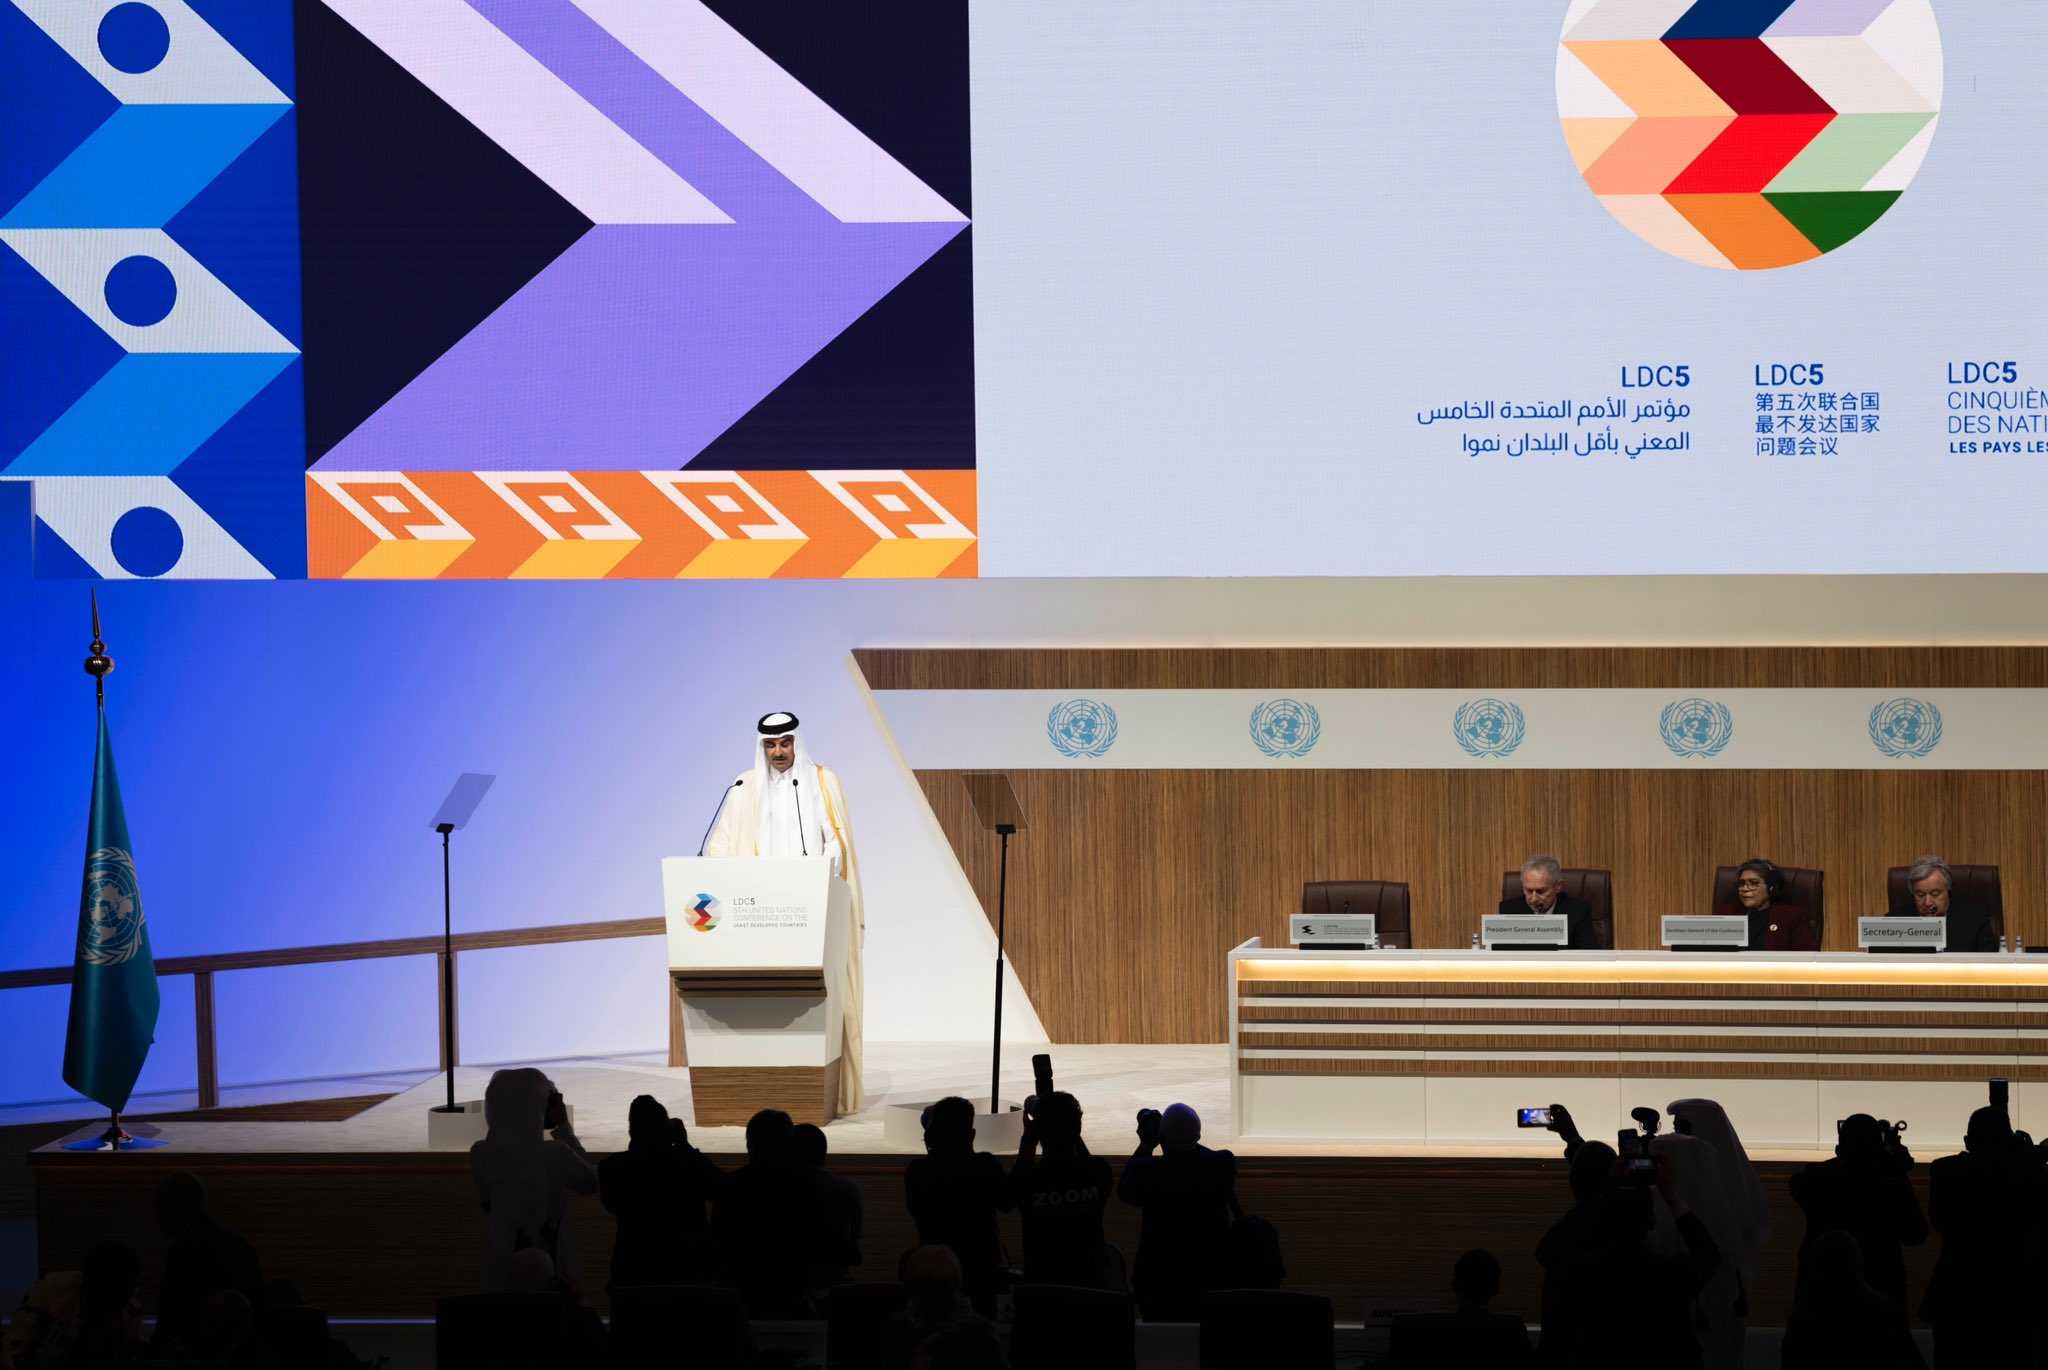 سمو الأمير المفدى يفتتح مؤتمر الأمم المتحدة الخامس المعني بأقل البلدان نموا والمنعقد تحت شعار من الإمكانات إلى الازدهار وذلك بمركز قطر الوطني للمؤتمرات